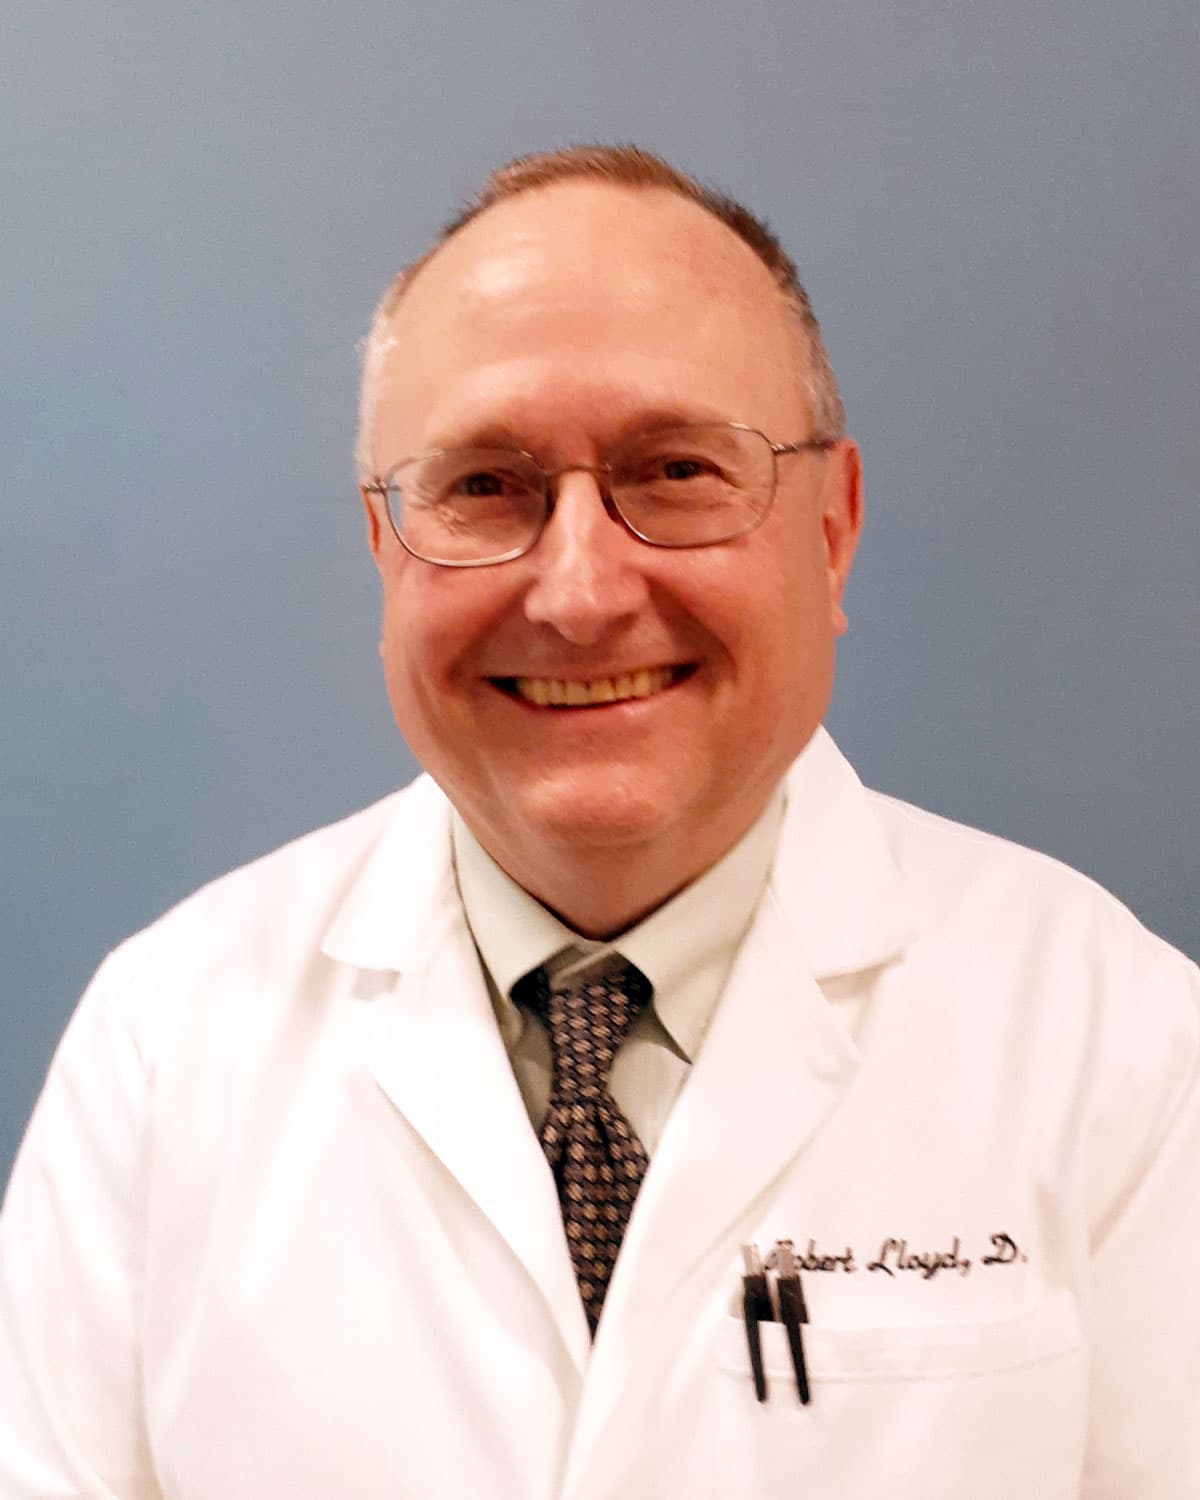 Robert Lloyd, DO, is an expert on surgery and rural medicine